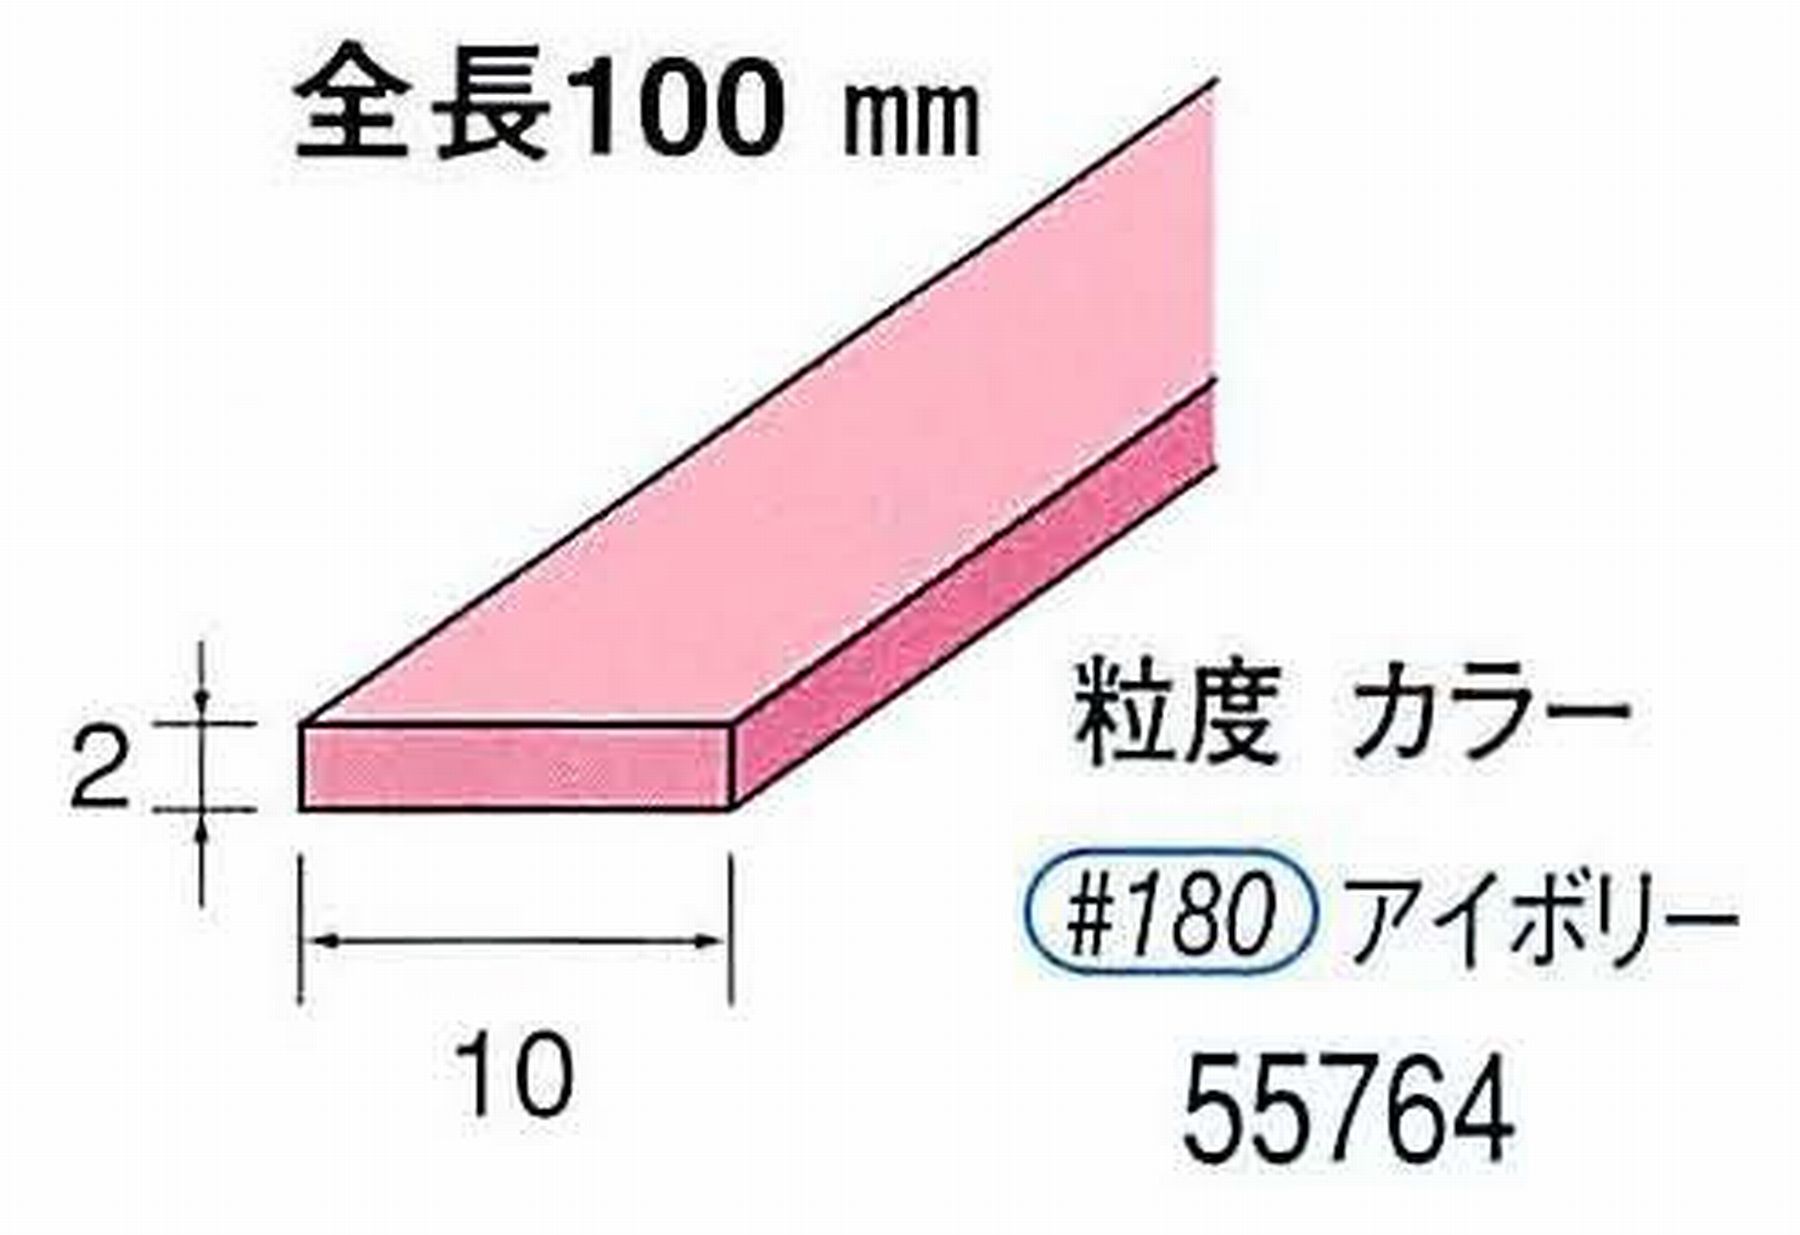 ナカニシ/NAKANISHI セラファイバー砥石 全長100mm アイボリー 55764